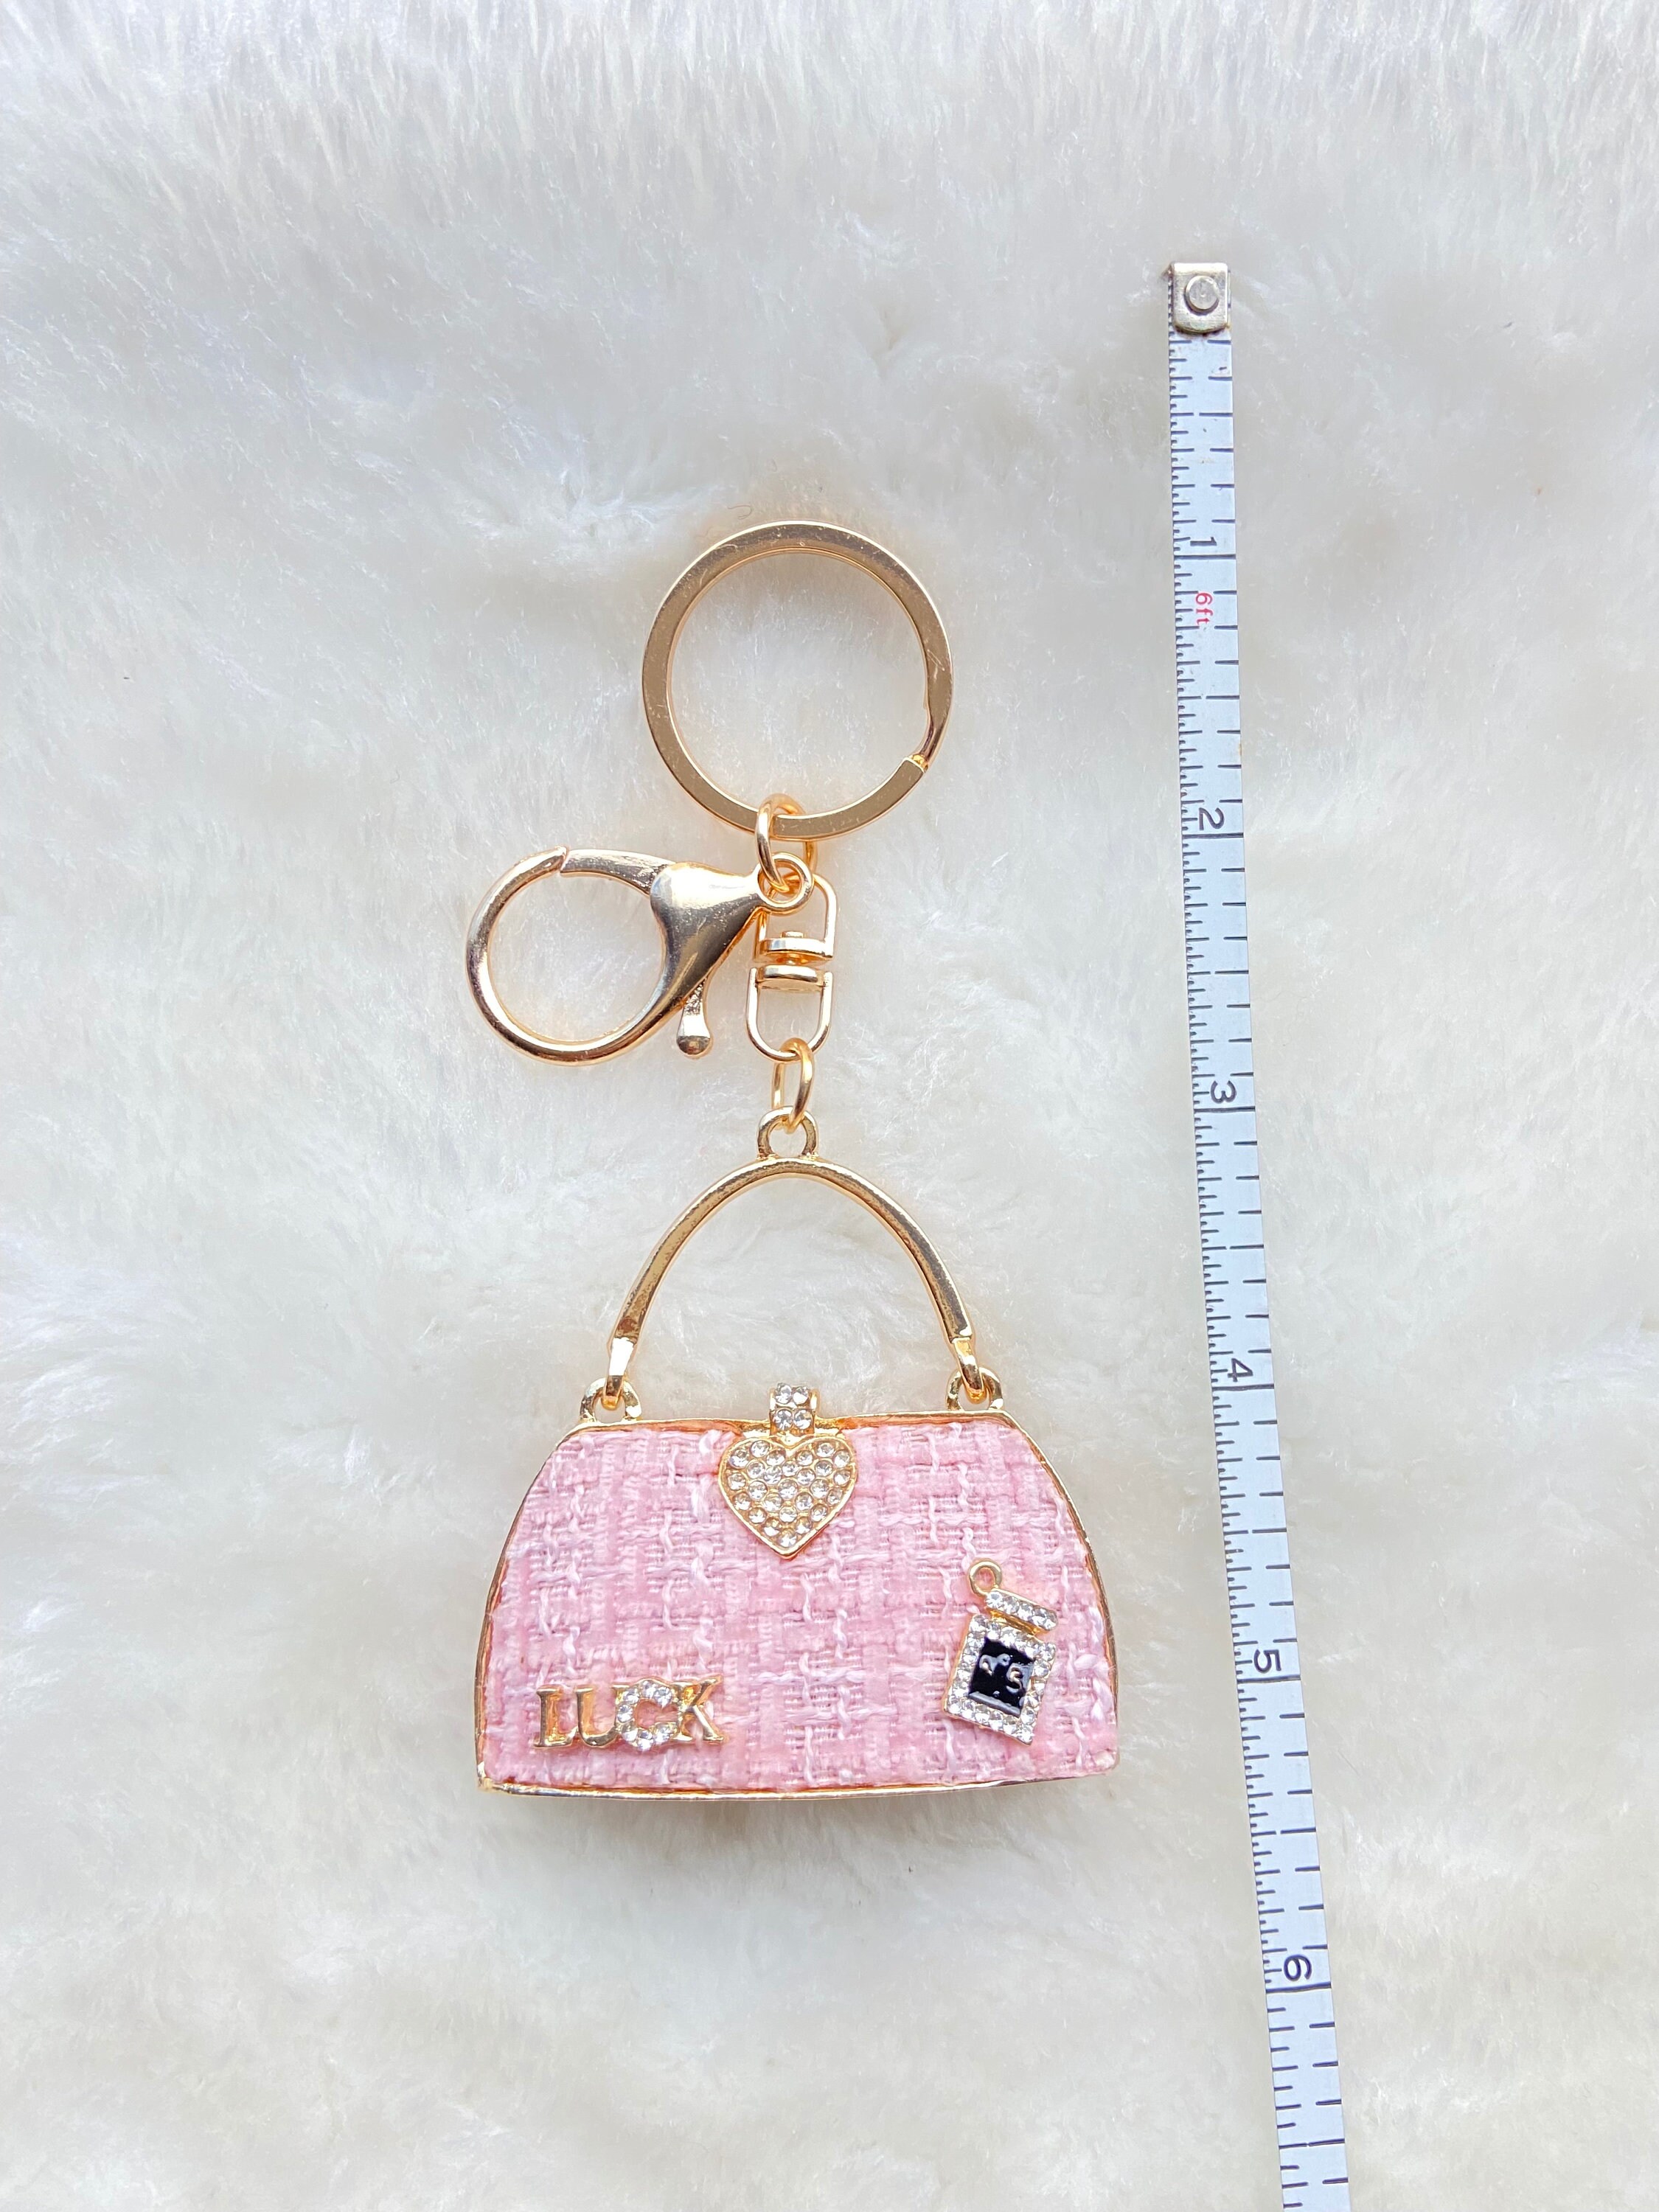 LOUIS VUITTON Bag charm Key chain holder ring Cadena Heart Flower